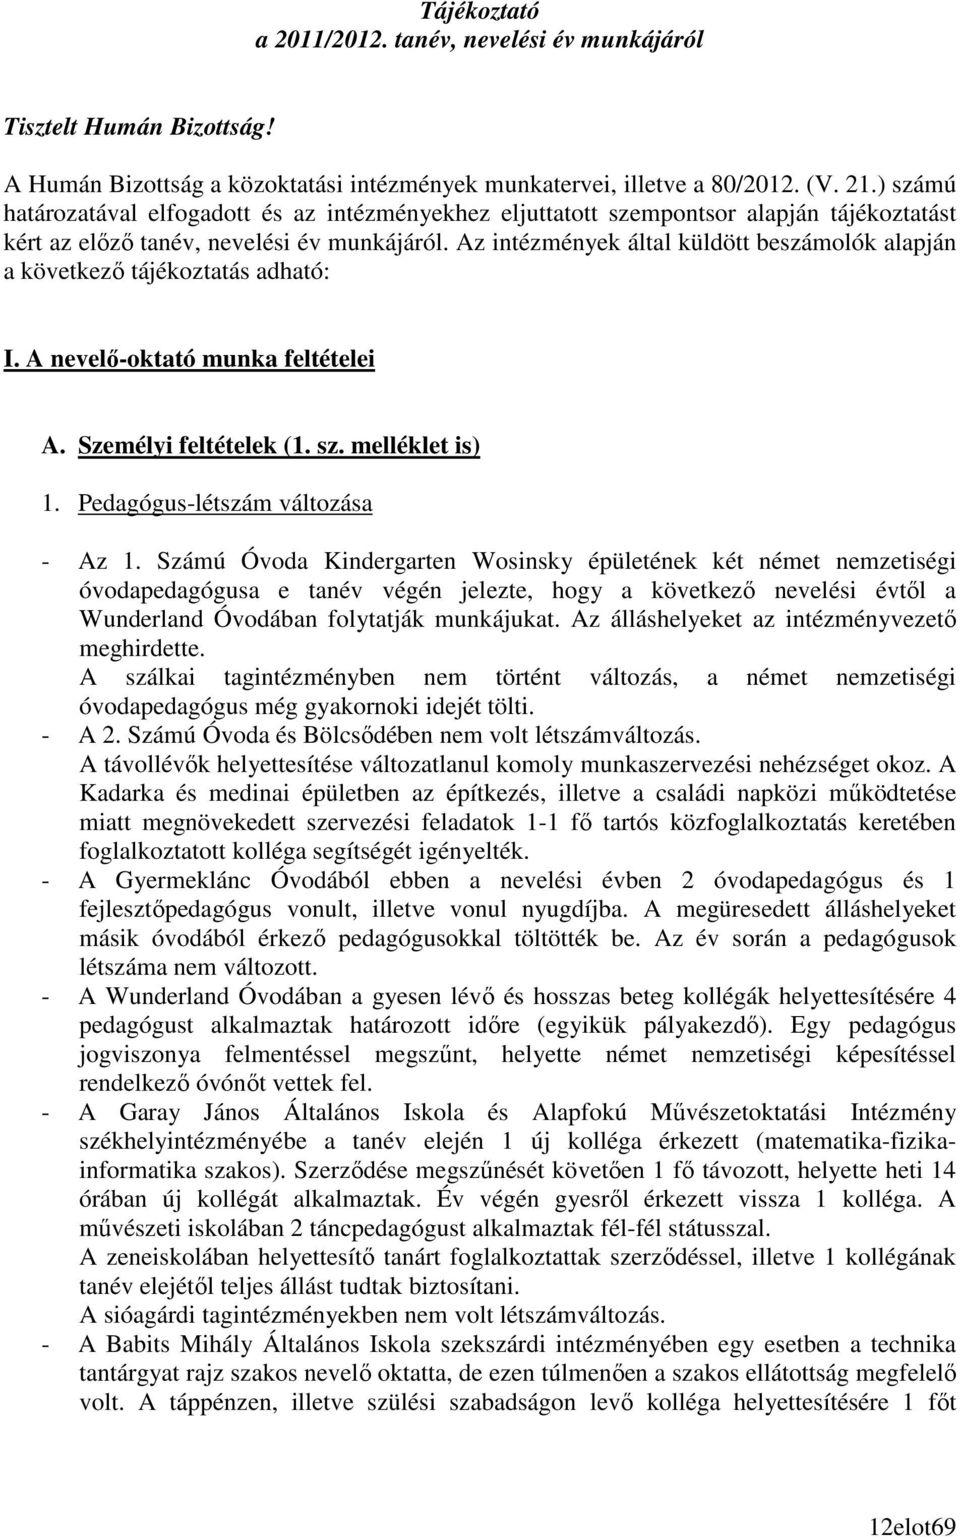 Az intézmények által küldött beszámolók alapján a következı tájékoztatás adható: I. A nevelı-oktató munka feltételei A. Személyi feltételek (1. sz. melléklet is) 1. Pedagógus-létszám változása - Az 1.